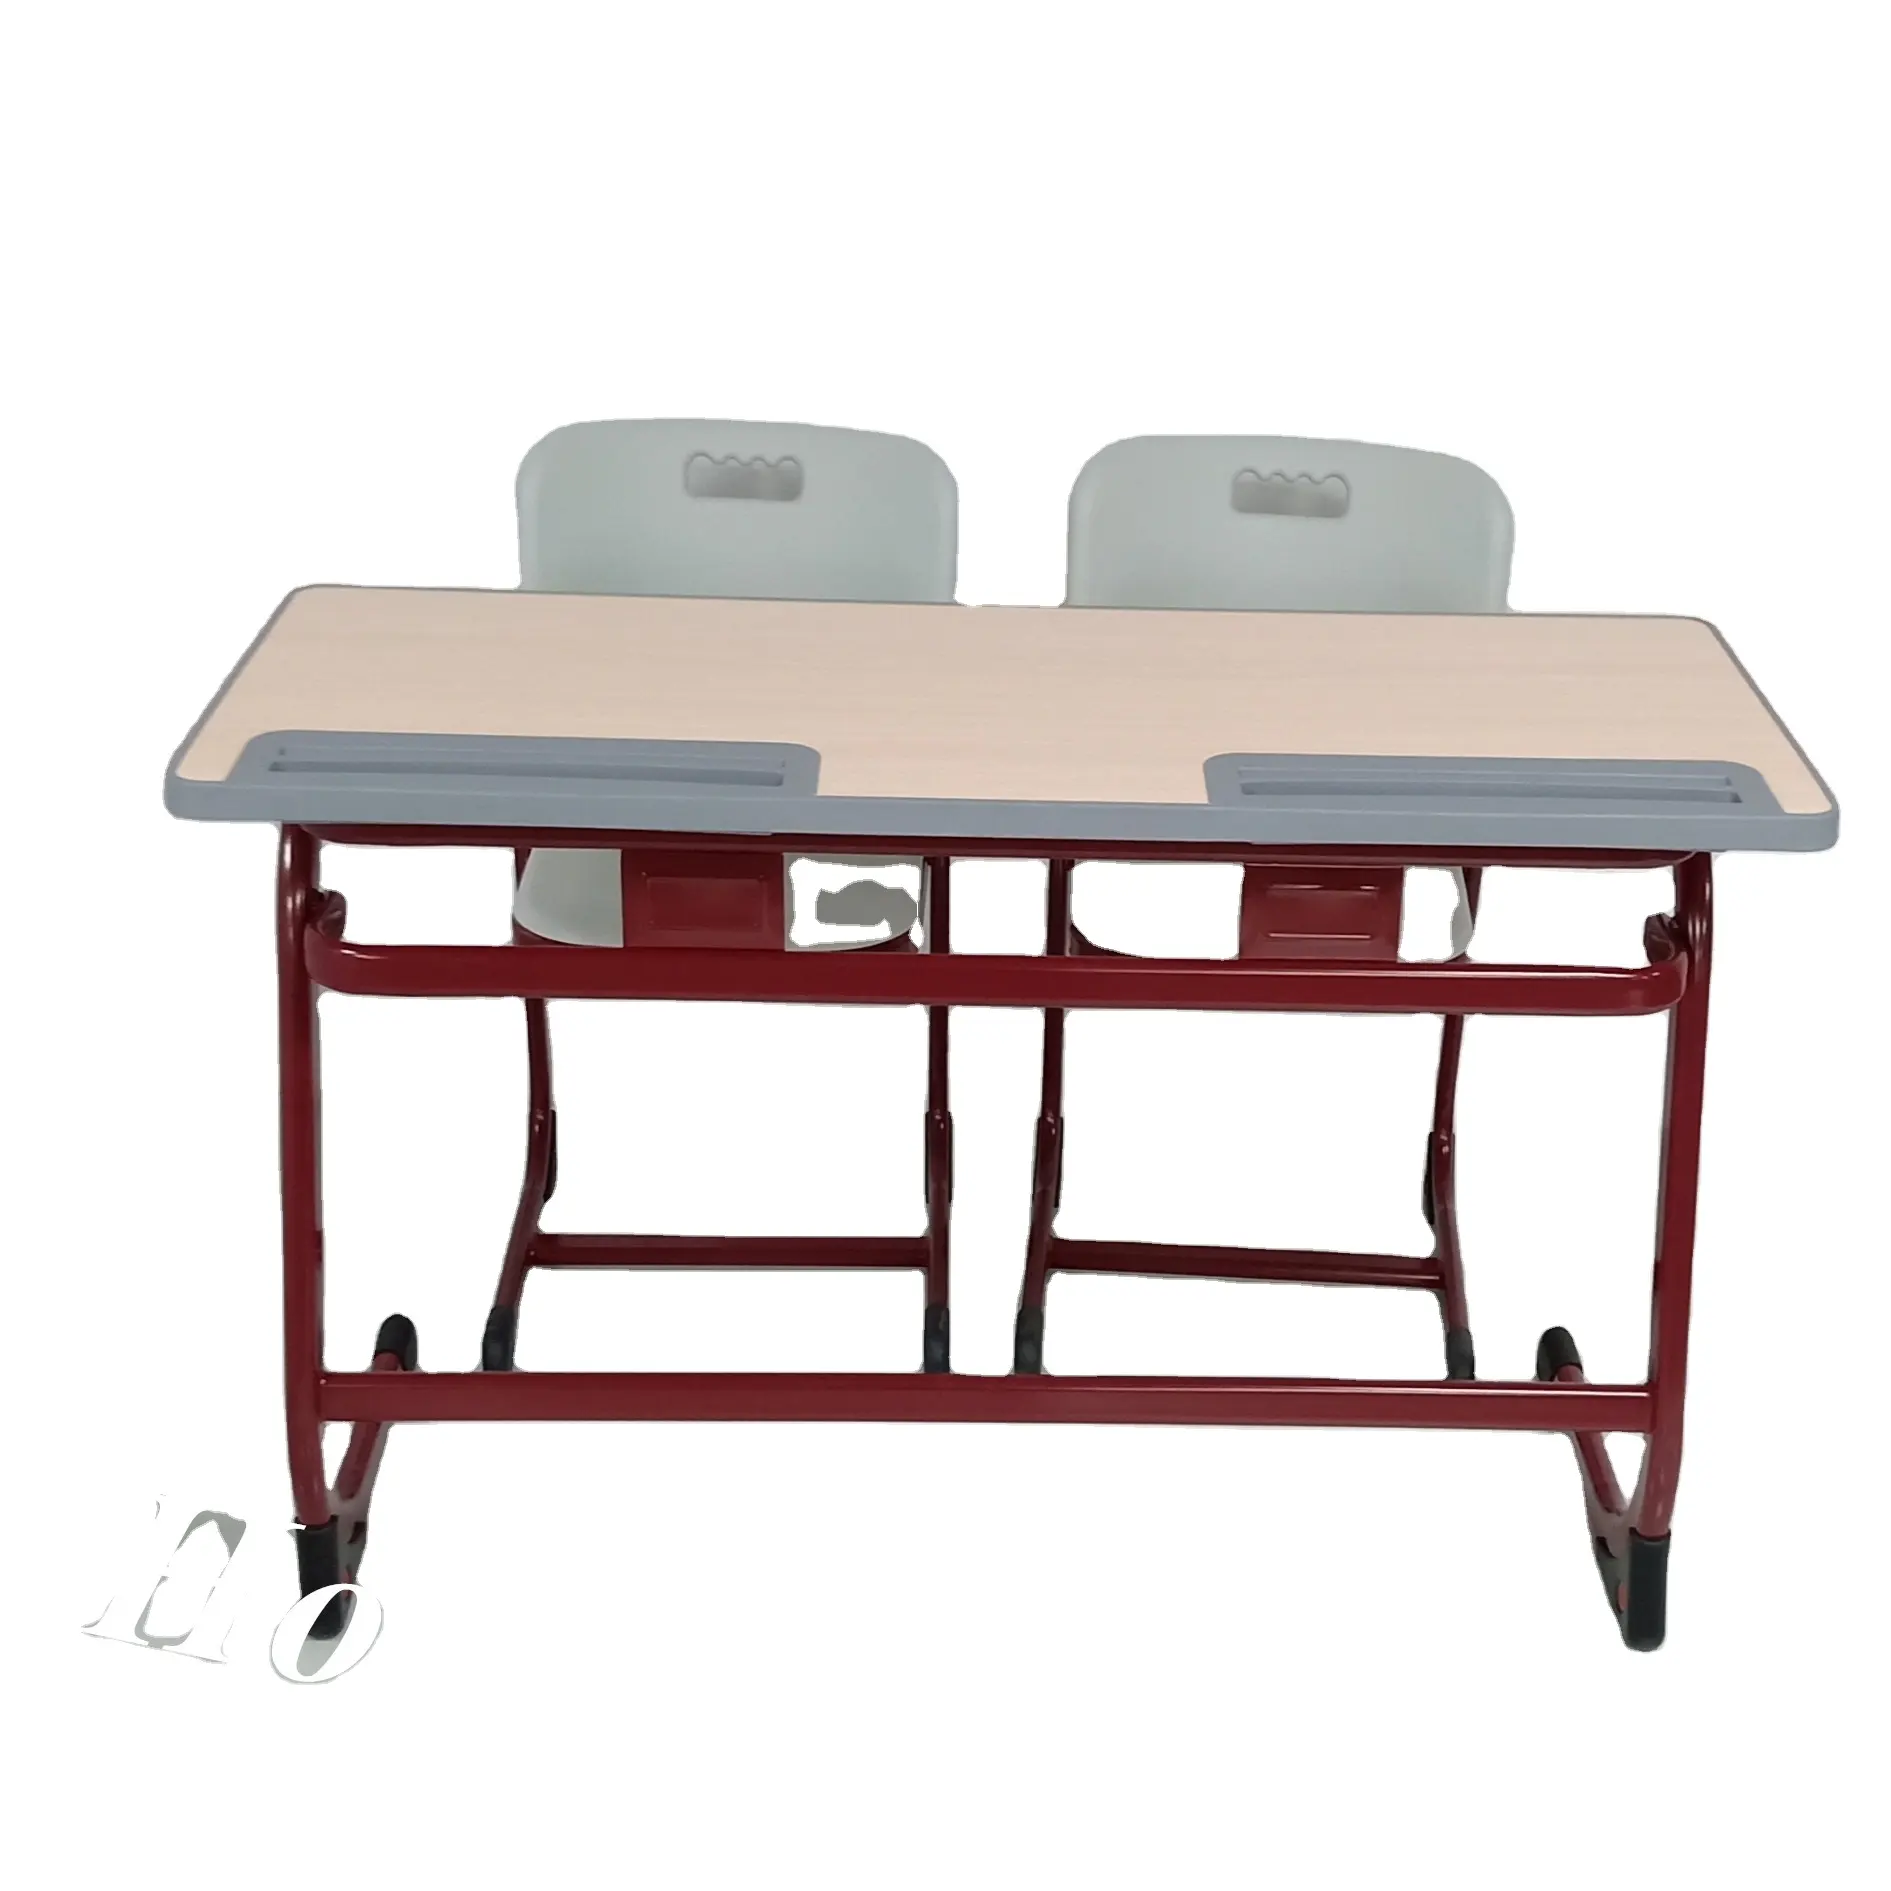 Yüksek kaliteli okul mobilyaları iki kişilik derslik sırası ve sandalye birincil orta okul öğrenci